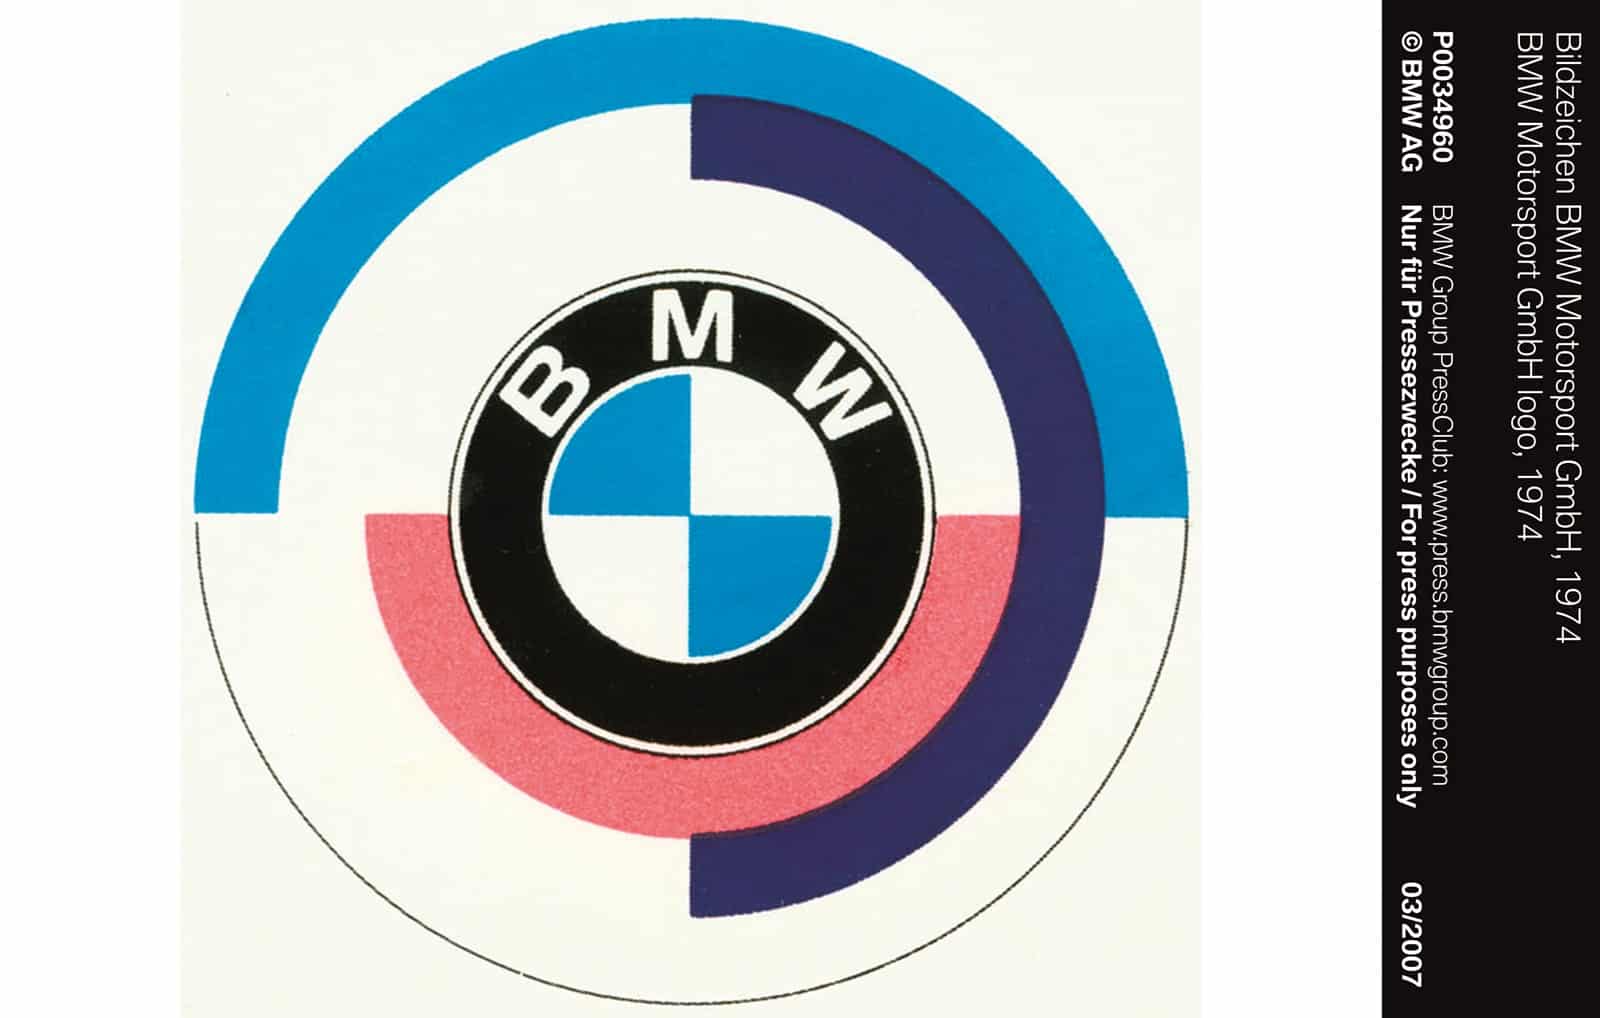 ¿De dónde vienen los tonos del logo de BMW M? ¿Qué representan?